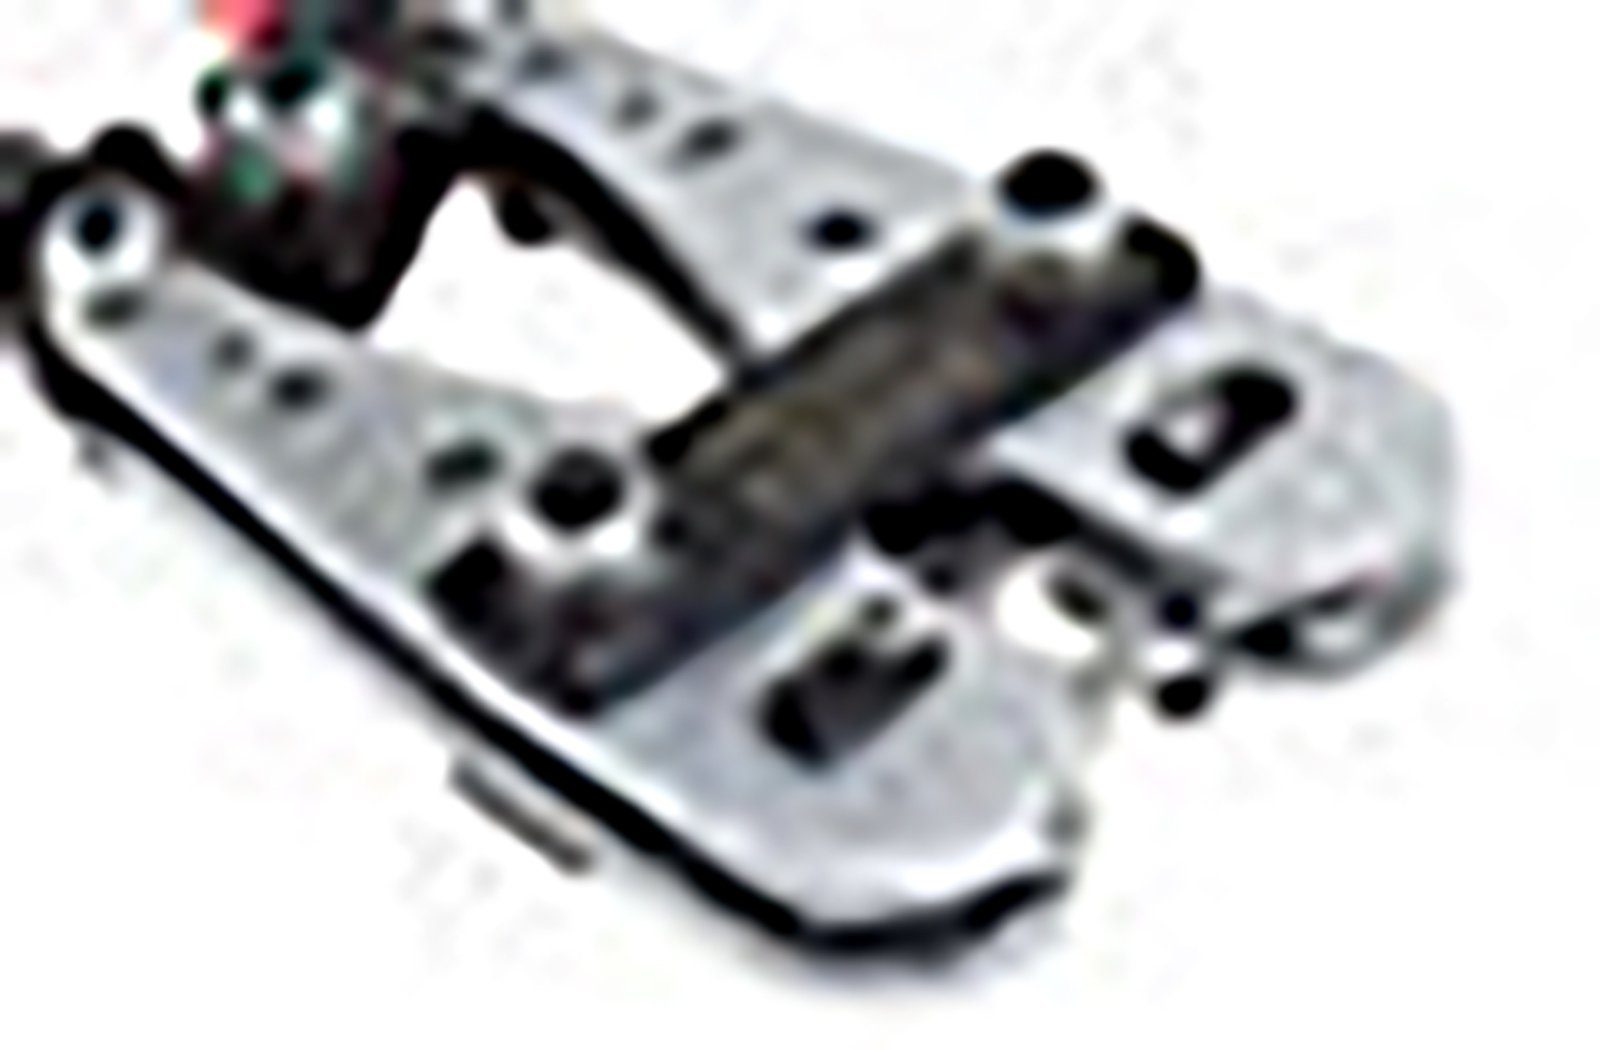 Presszange 25-150mm² Kabelschuhe für Presszange 25-150mm² ADELID Serien-/Parallelverbinder Rotationsspannbacken - Lötkabelschuh, Crimpzange